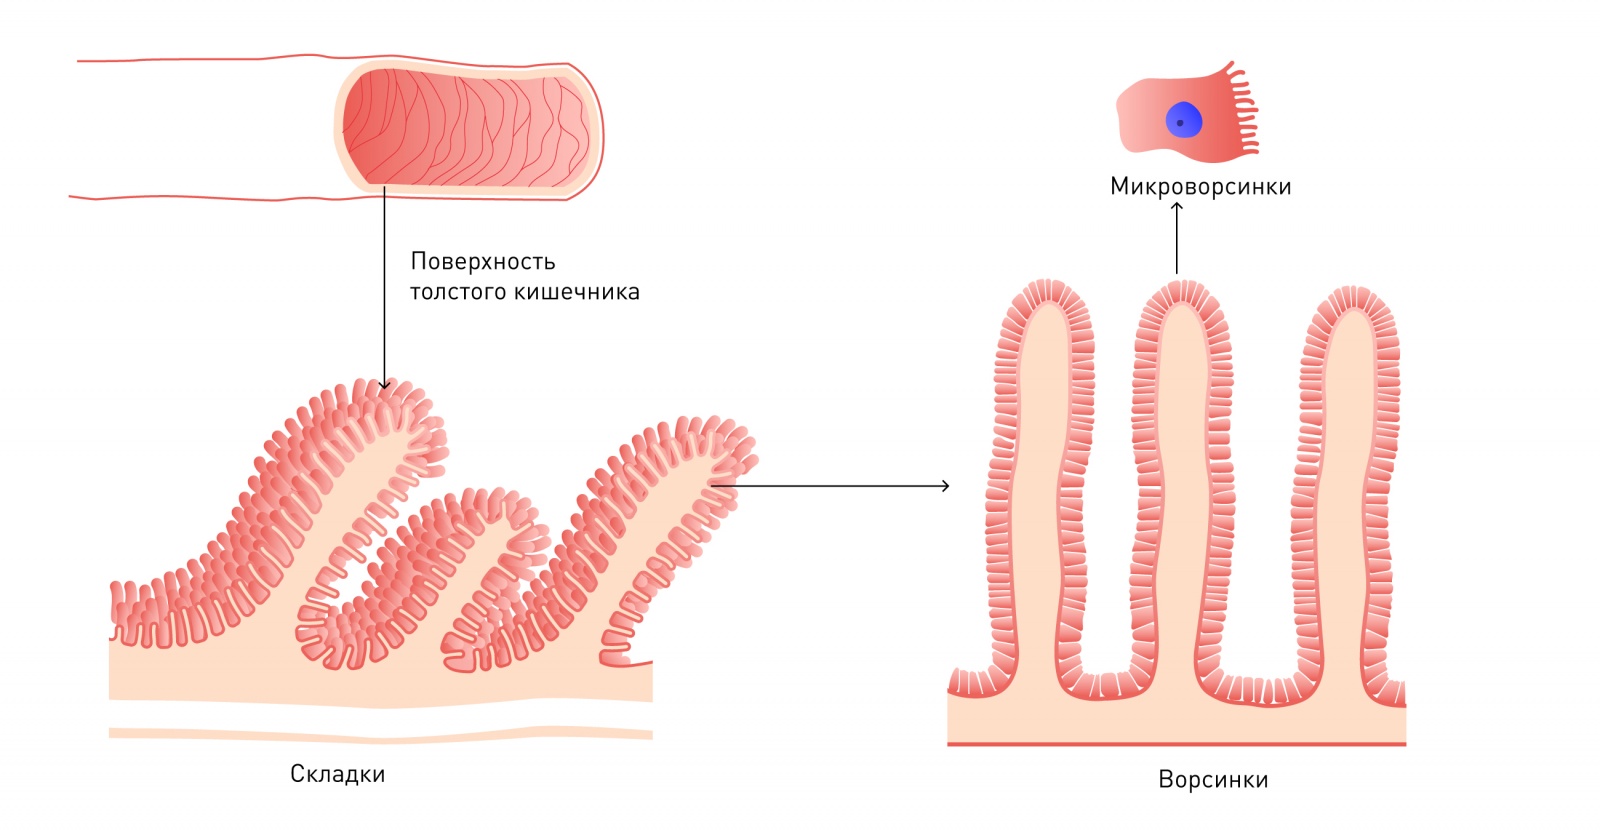 Микробиота. Что это за орган и зачем он нам - 3